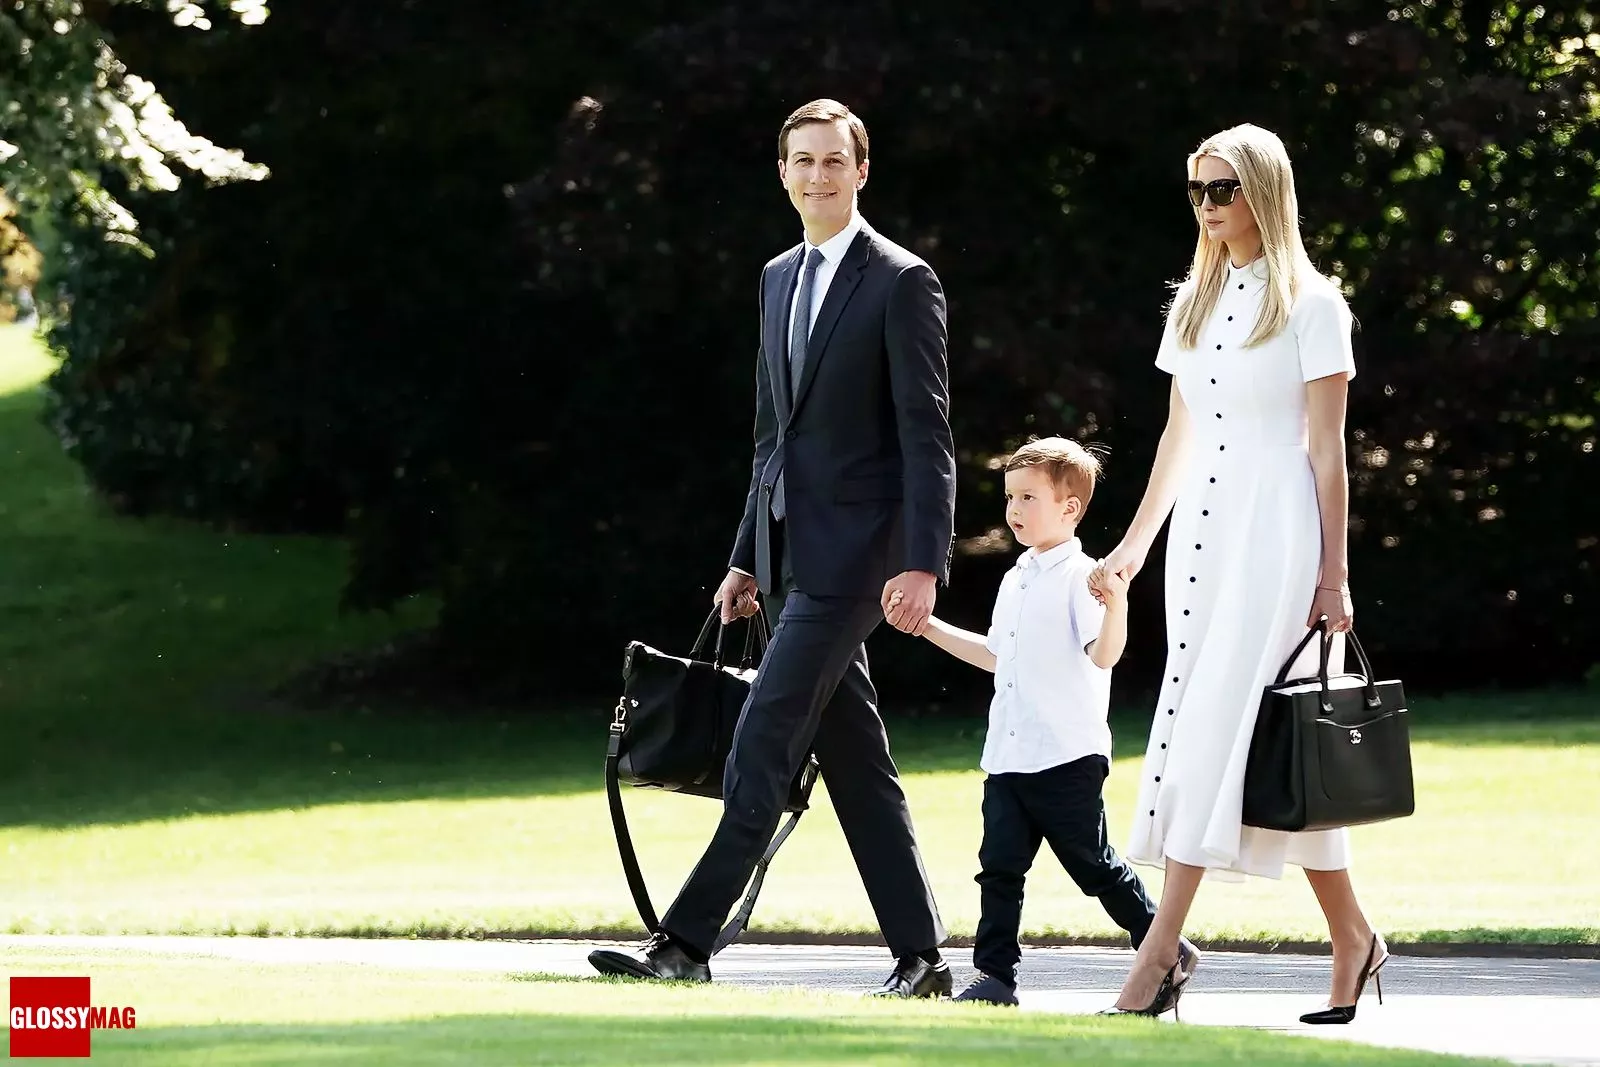 Джаред Кушнер и Иванка Трамп с сыном Джозефом Кушнером прогуливаются по Южной лужайке Белого дома в Вашингтоне, 29 июня 2018 г.